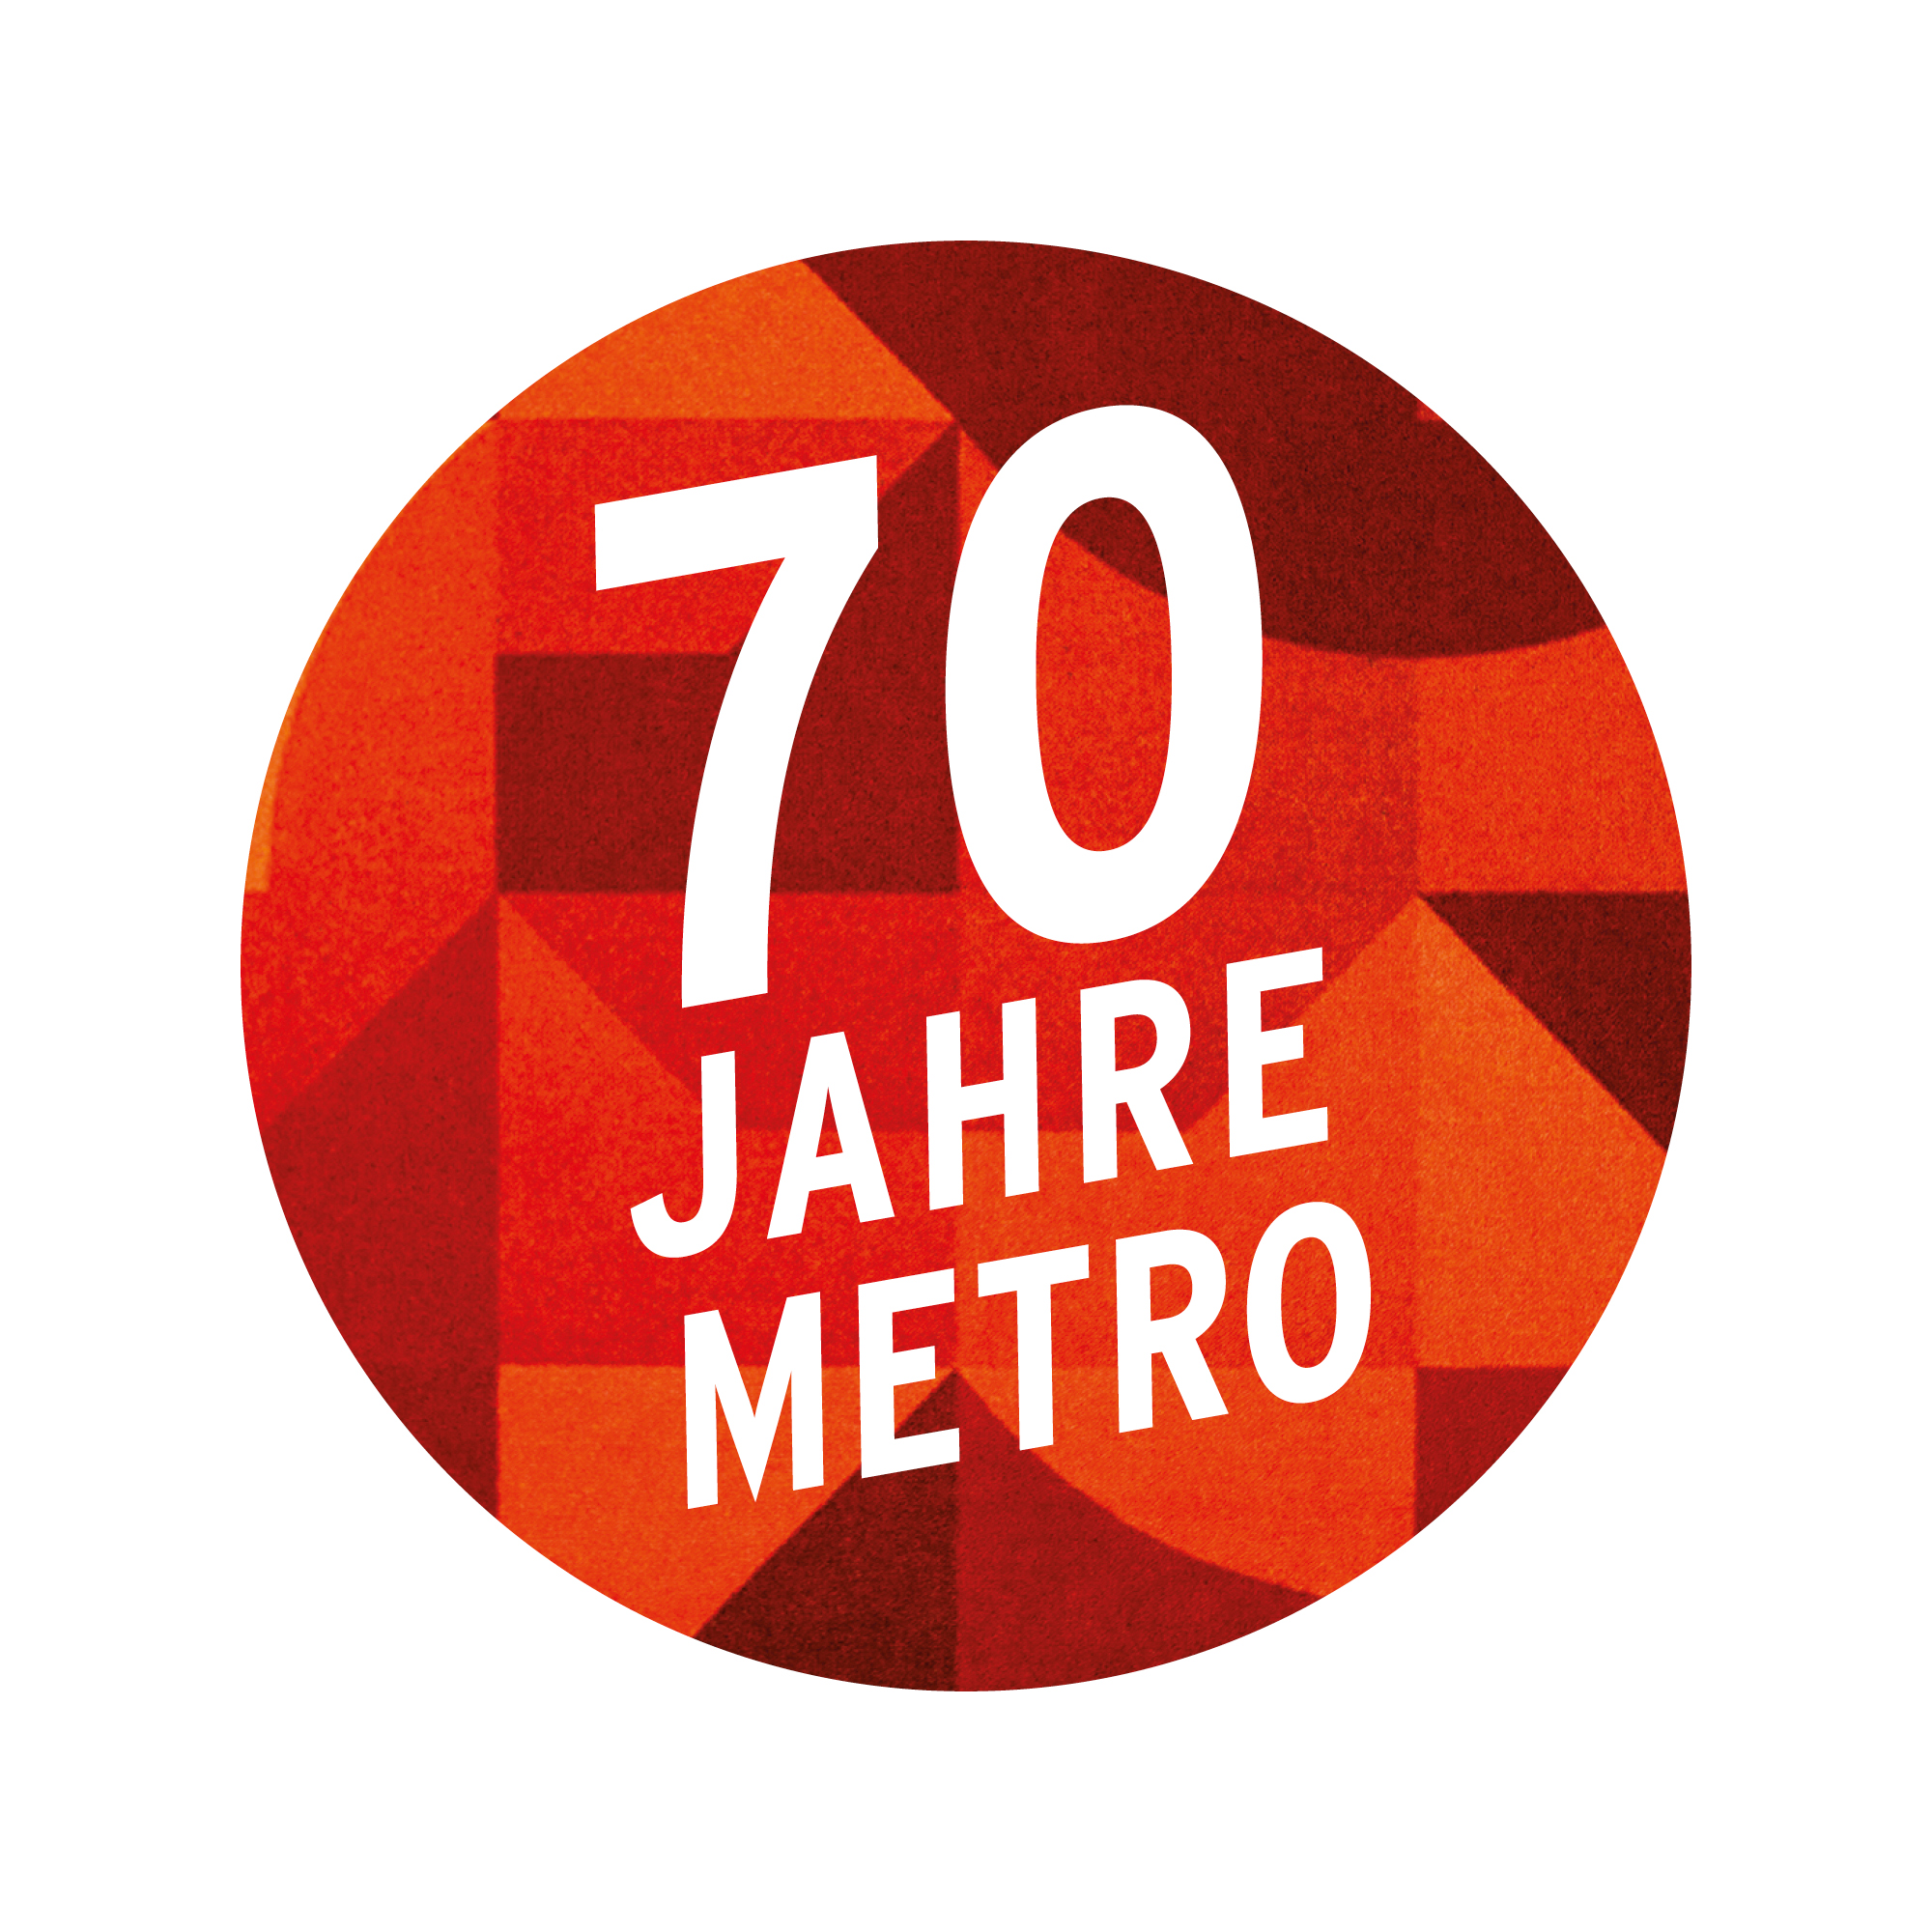 Sticker 70 Jahre Metro